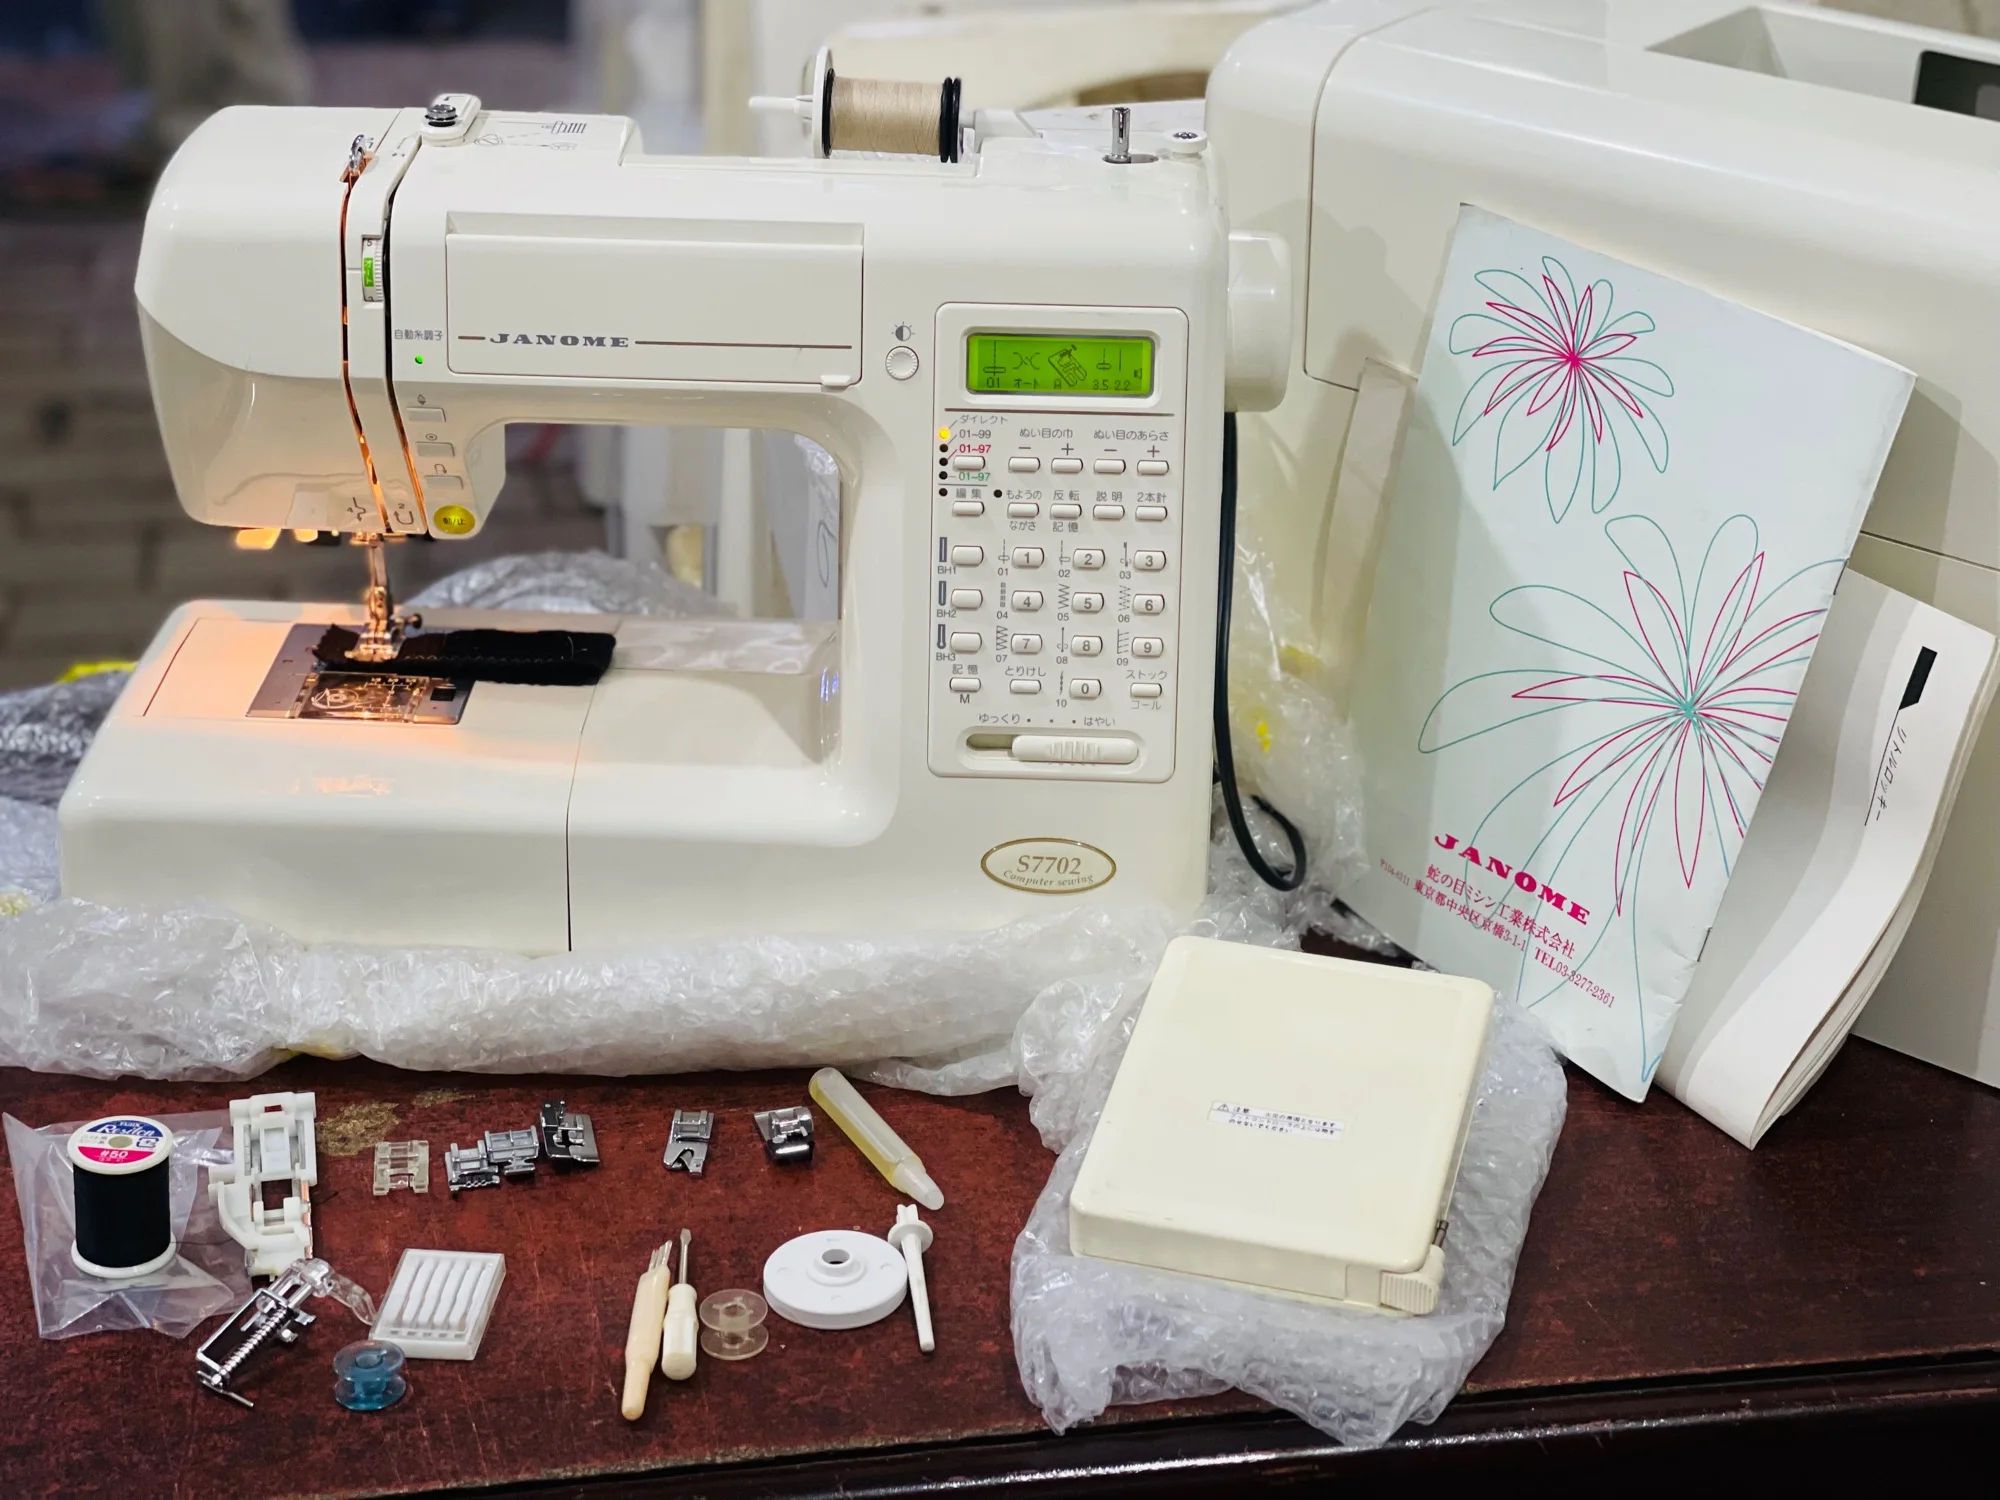 Janome S7700 sewing machine